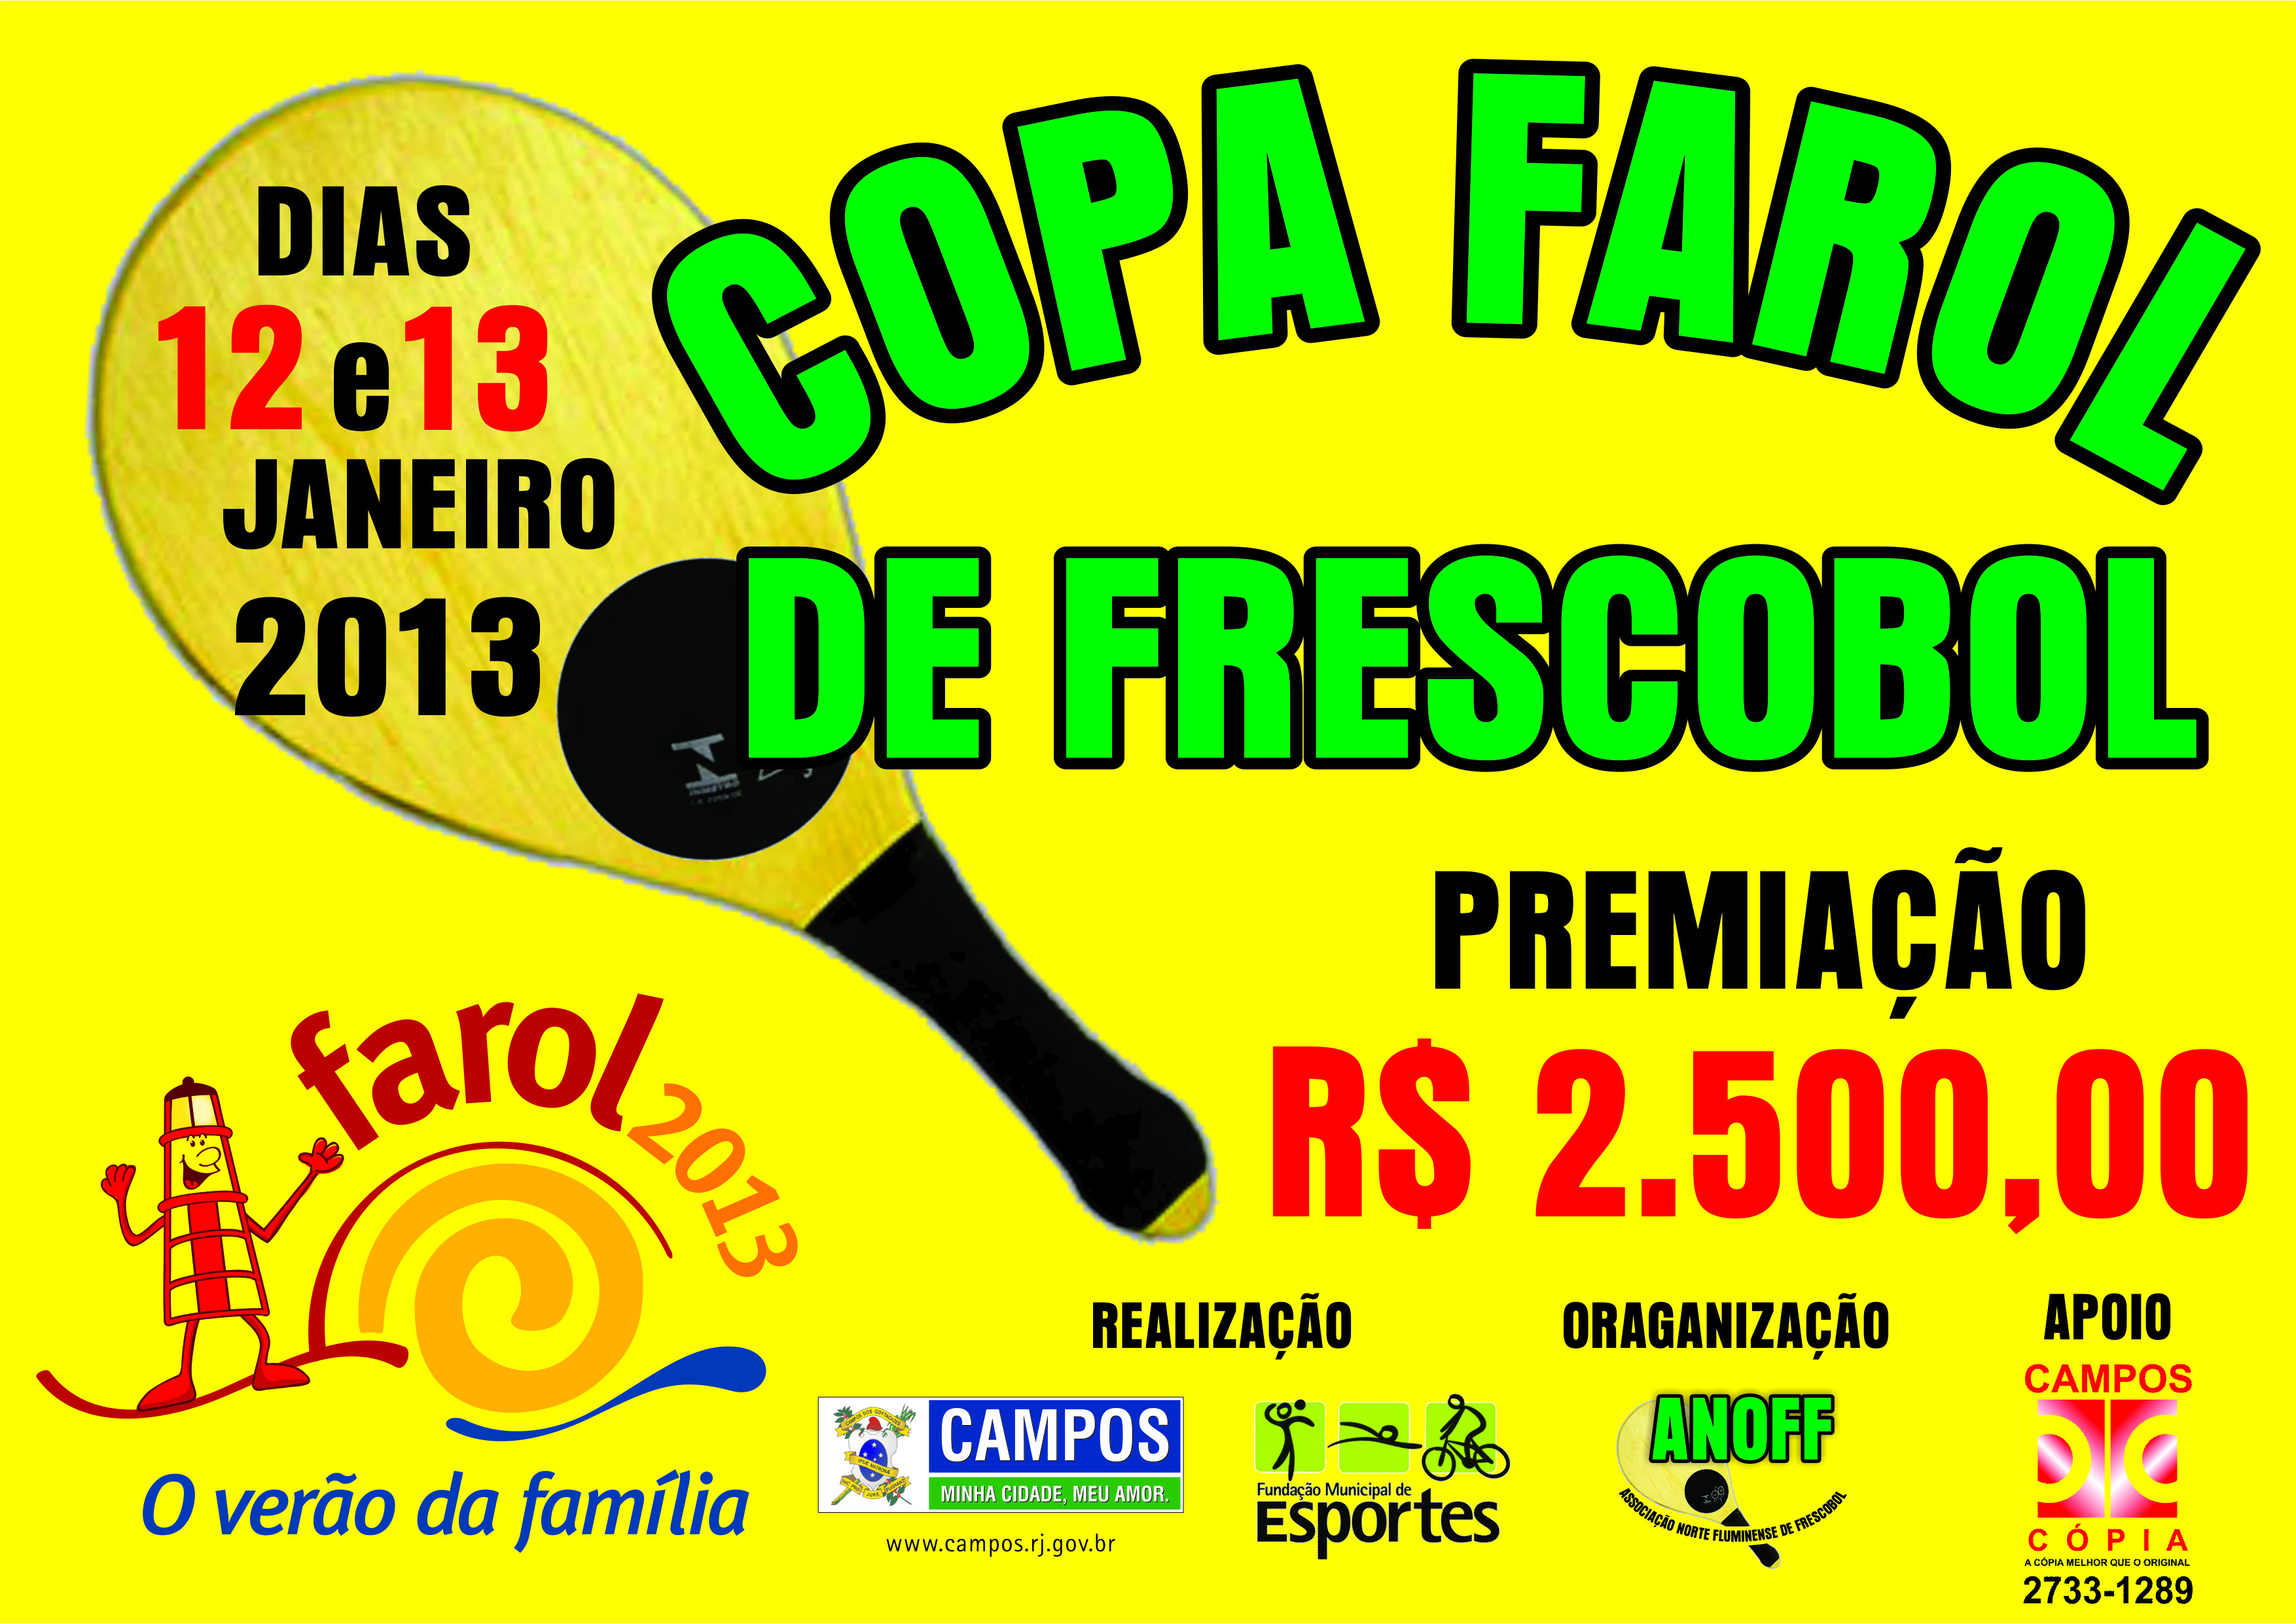 A Fundação Municipal de Esportes (FME), em parceria com a Associação Norte Fluminense de Frescobol (Anoff), realiza nos dias 12 e 13 de janeiro de 2013, a 5ª Copa Farol de Frescobol (Foto: Divulgação)